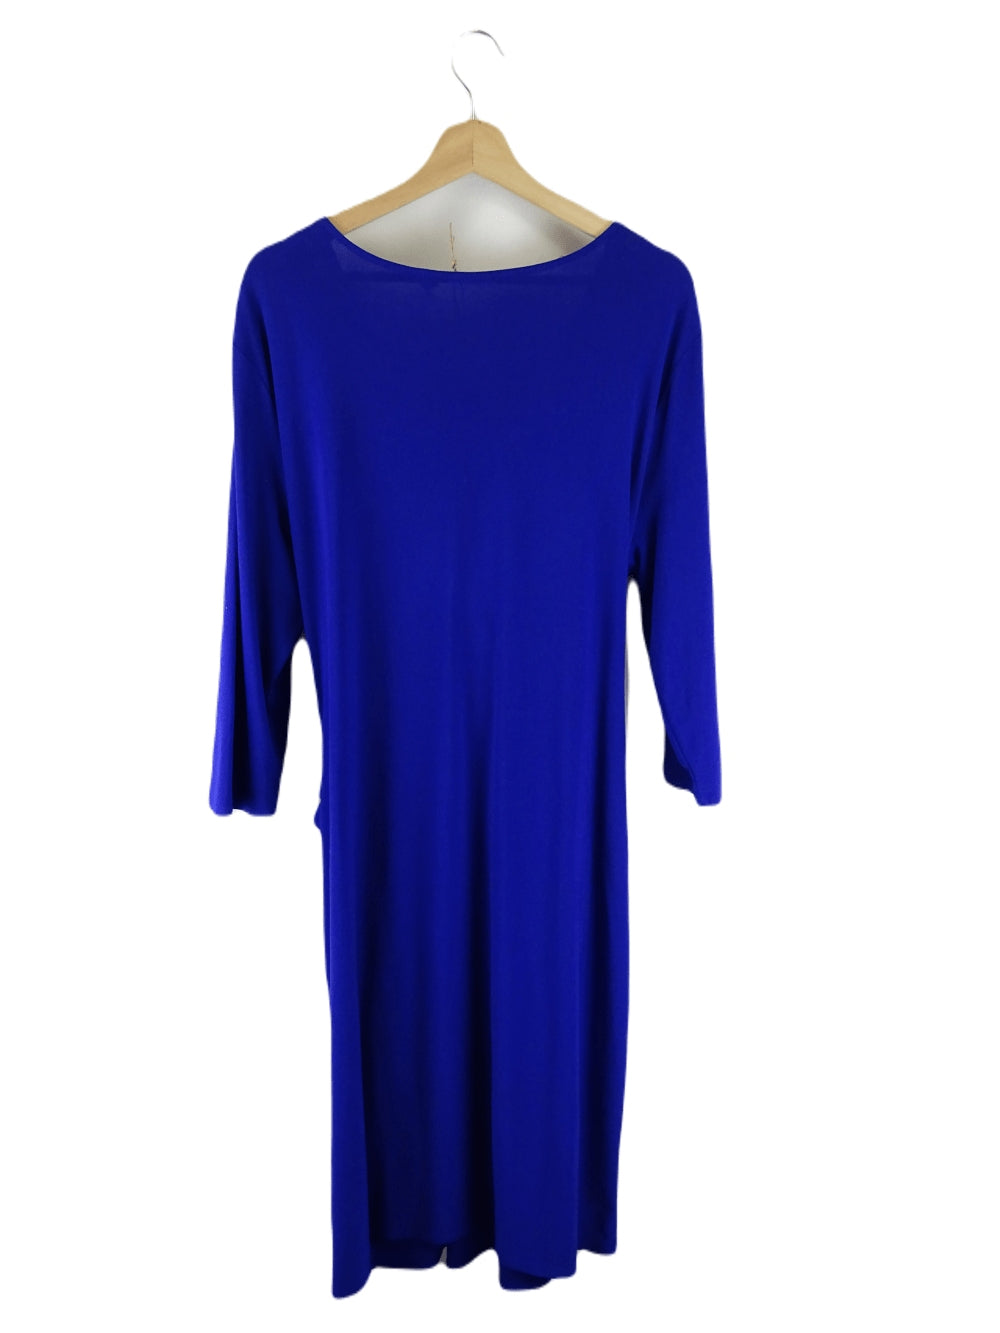 Elie Tahari Blue Dress XL